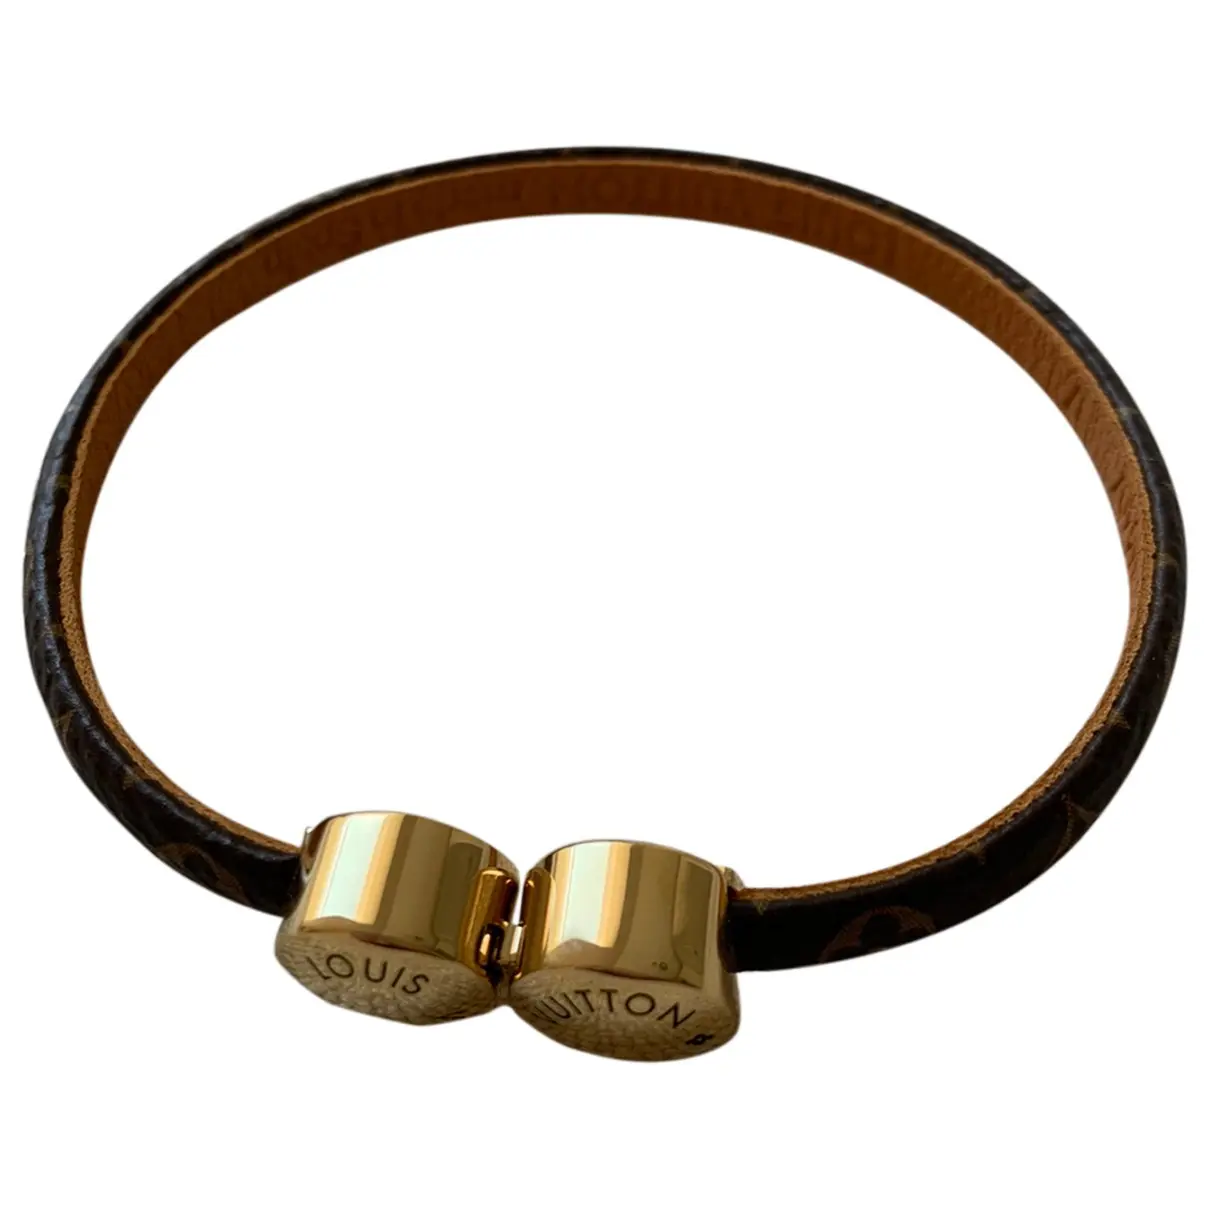 Monogram bracelet Louis Vuitton